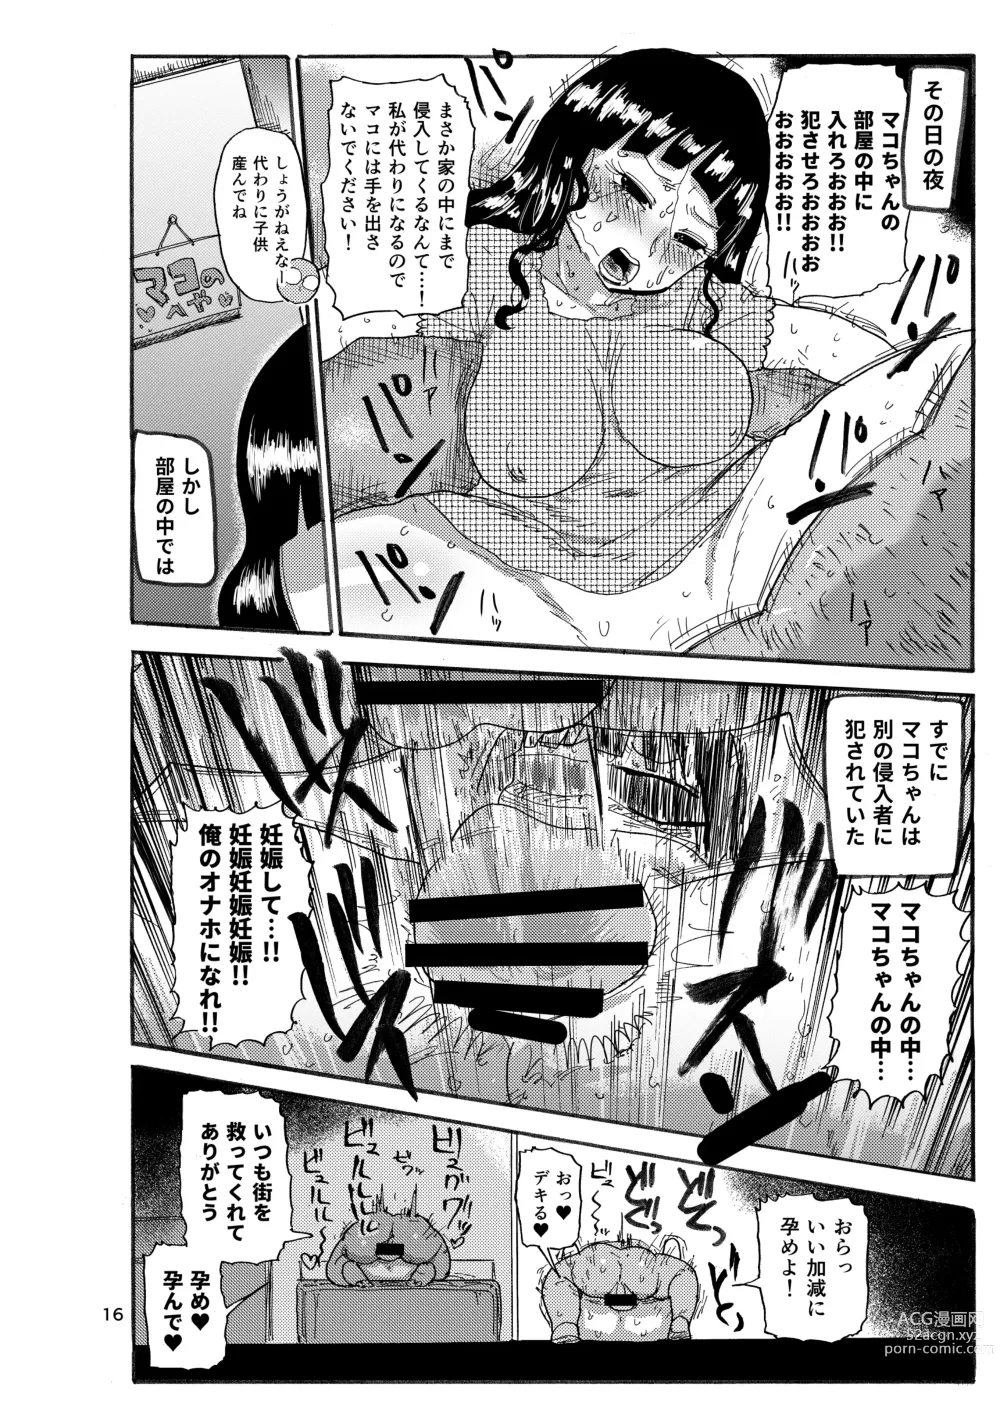 Page 15 of doujinshi Ima made no kaijou gentei hon-tachi matome